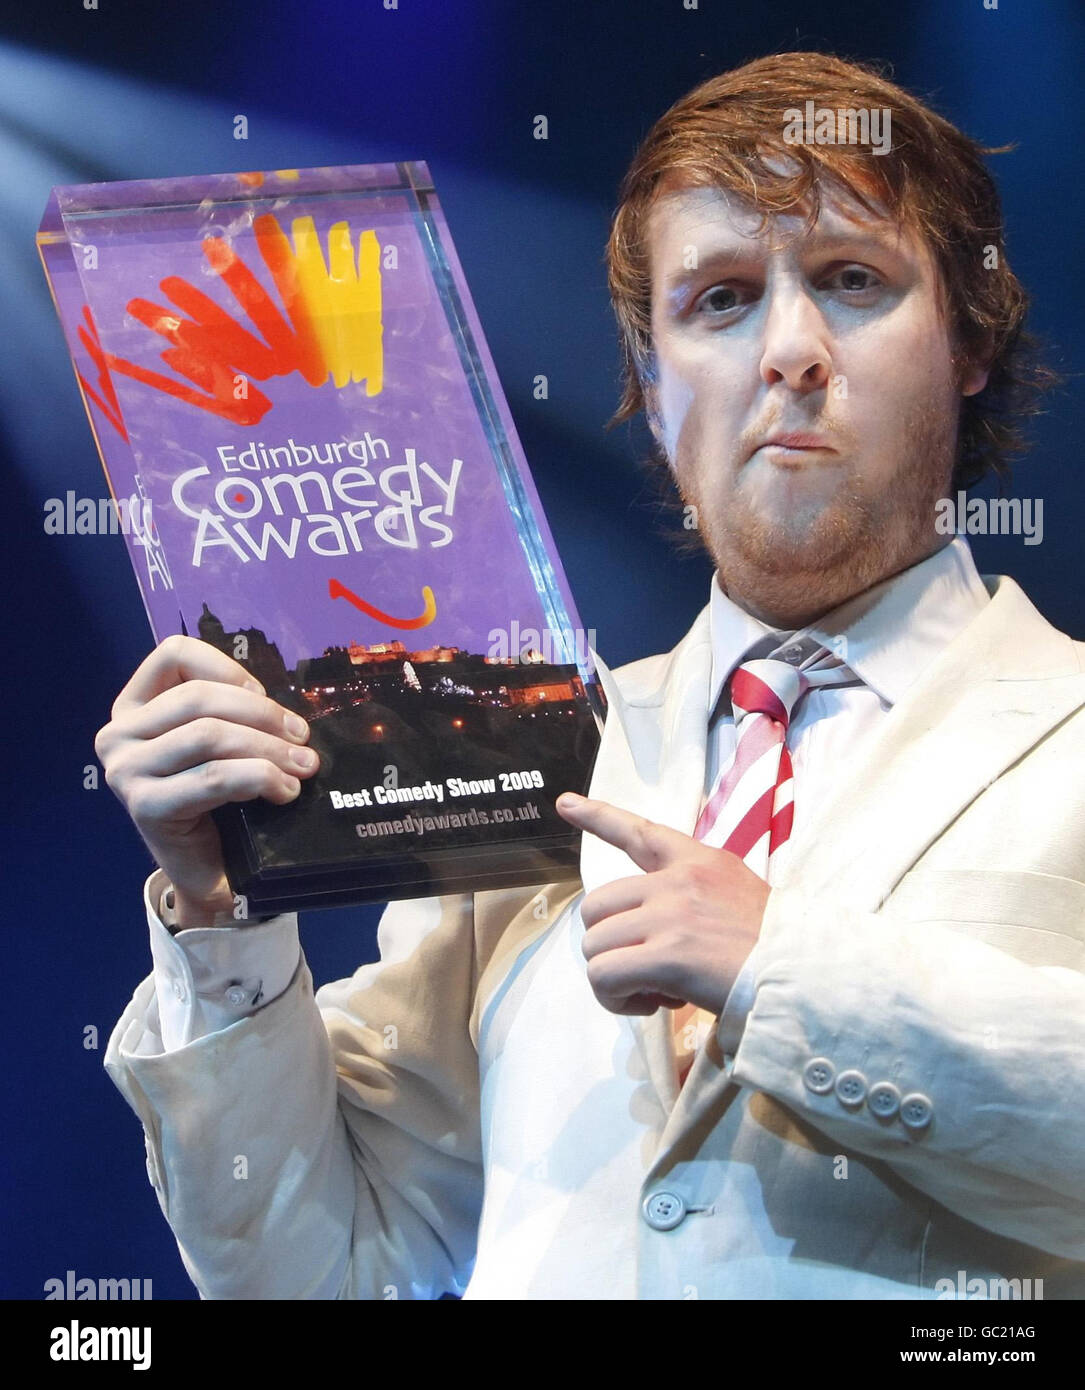 Tim Key, l'un des nominés dans la catégorie Best Comedy Show des 29e Edinburgh Comedy Awards lors d'une séance photo au Plealance Grand, à Édimbourg. Banque D'Images